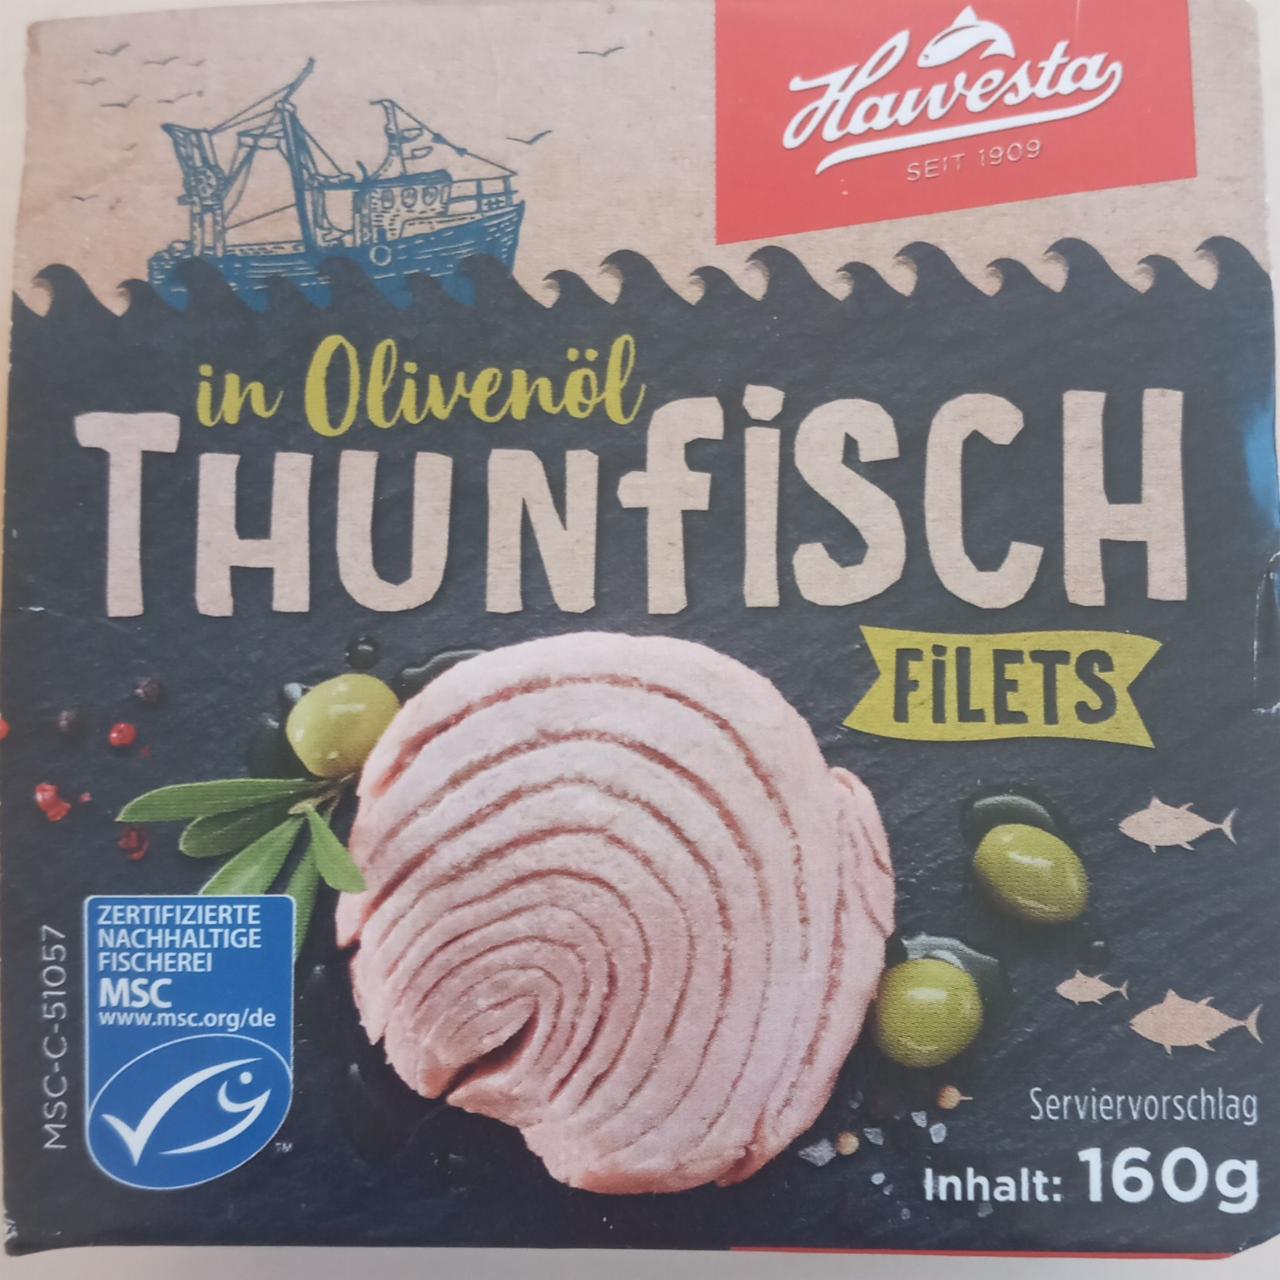 Fotografie - Thunfisch Filets in Olivenöl Hawesta